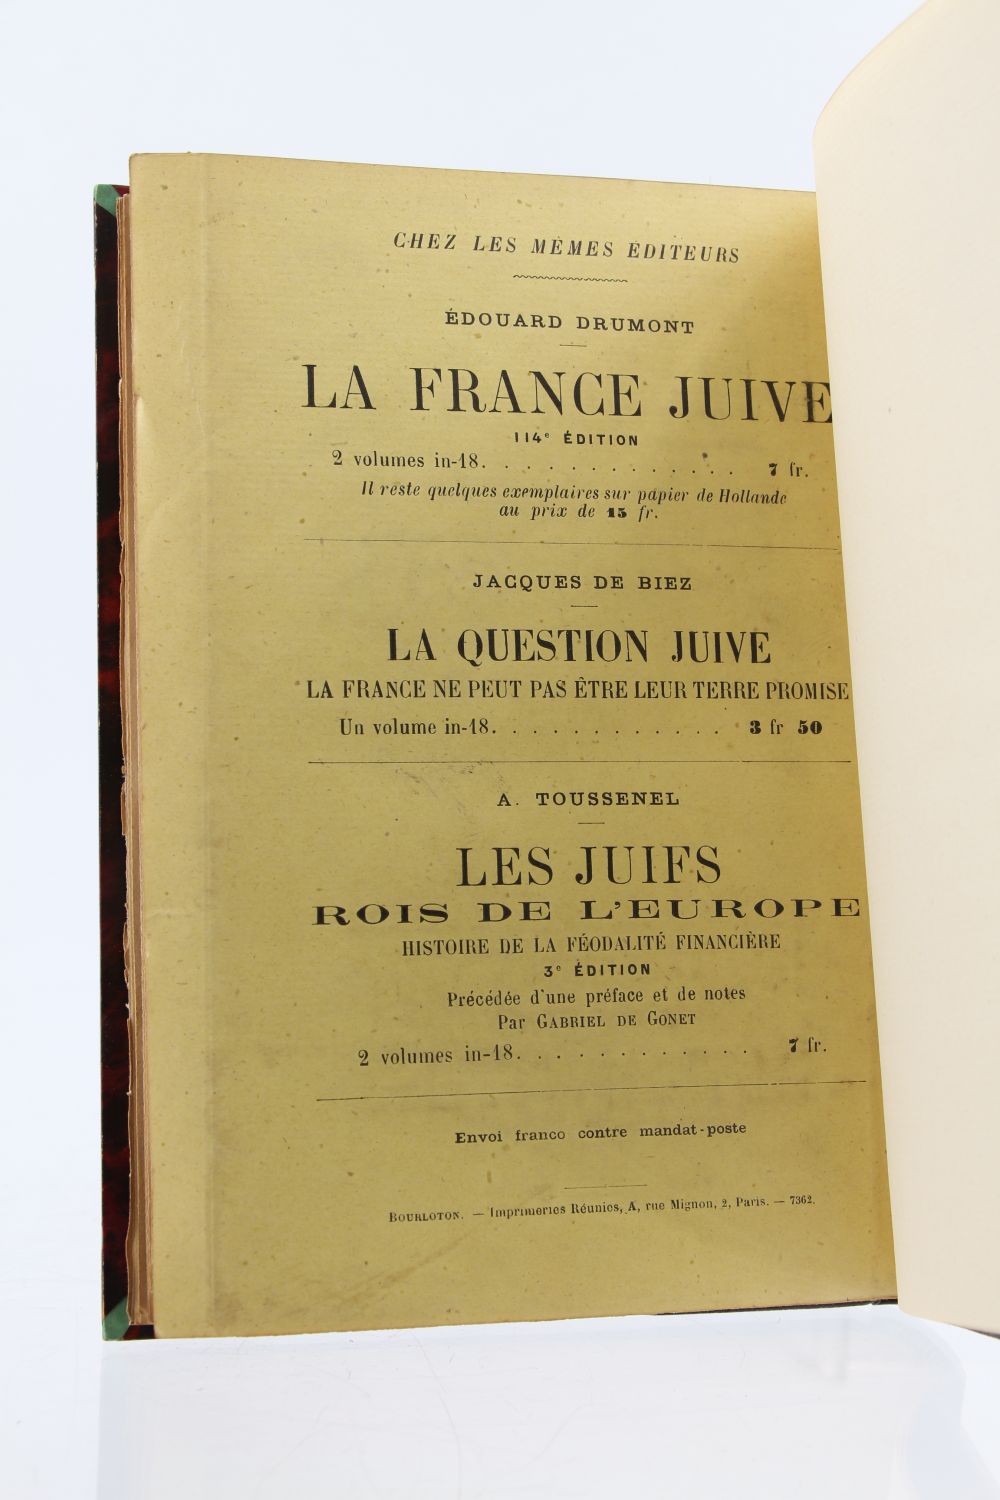 La France juive devant l'opinion - Édouard Drumont - Google Books